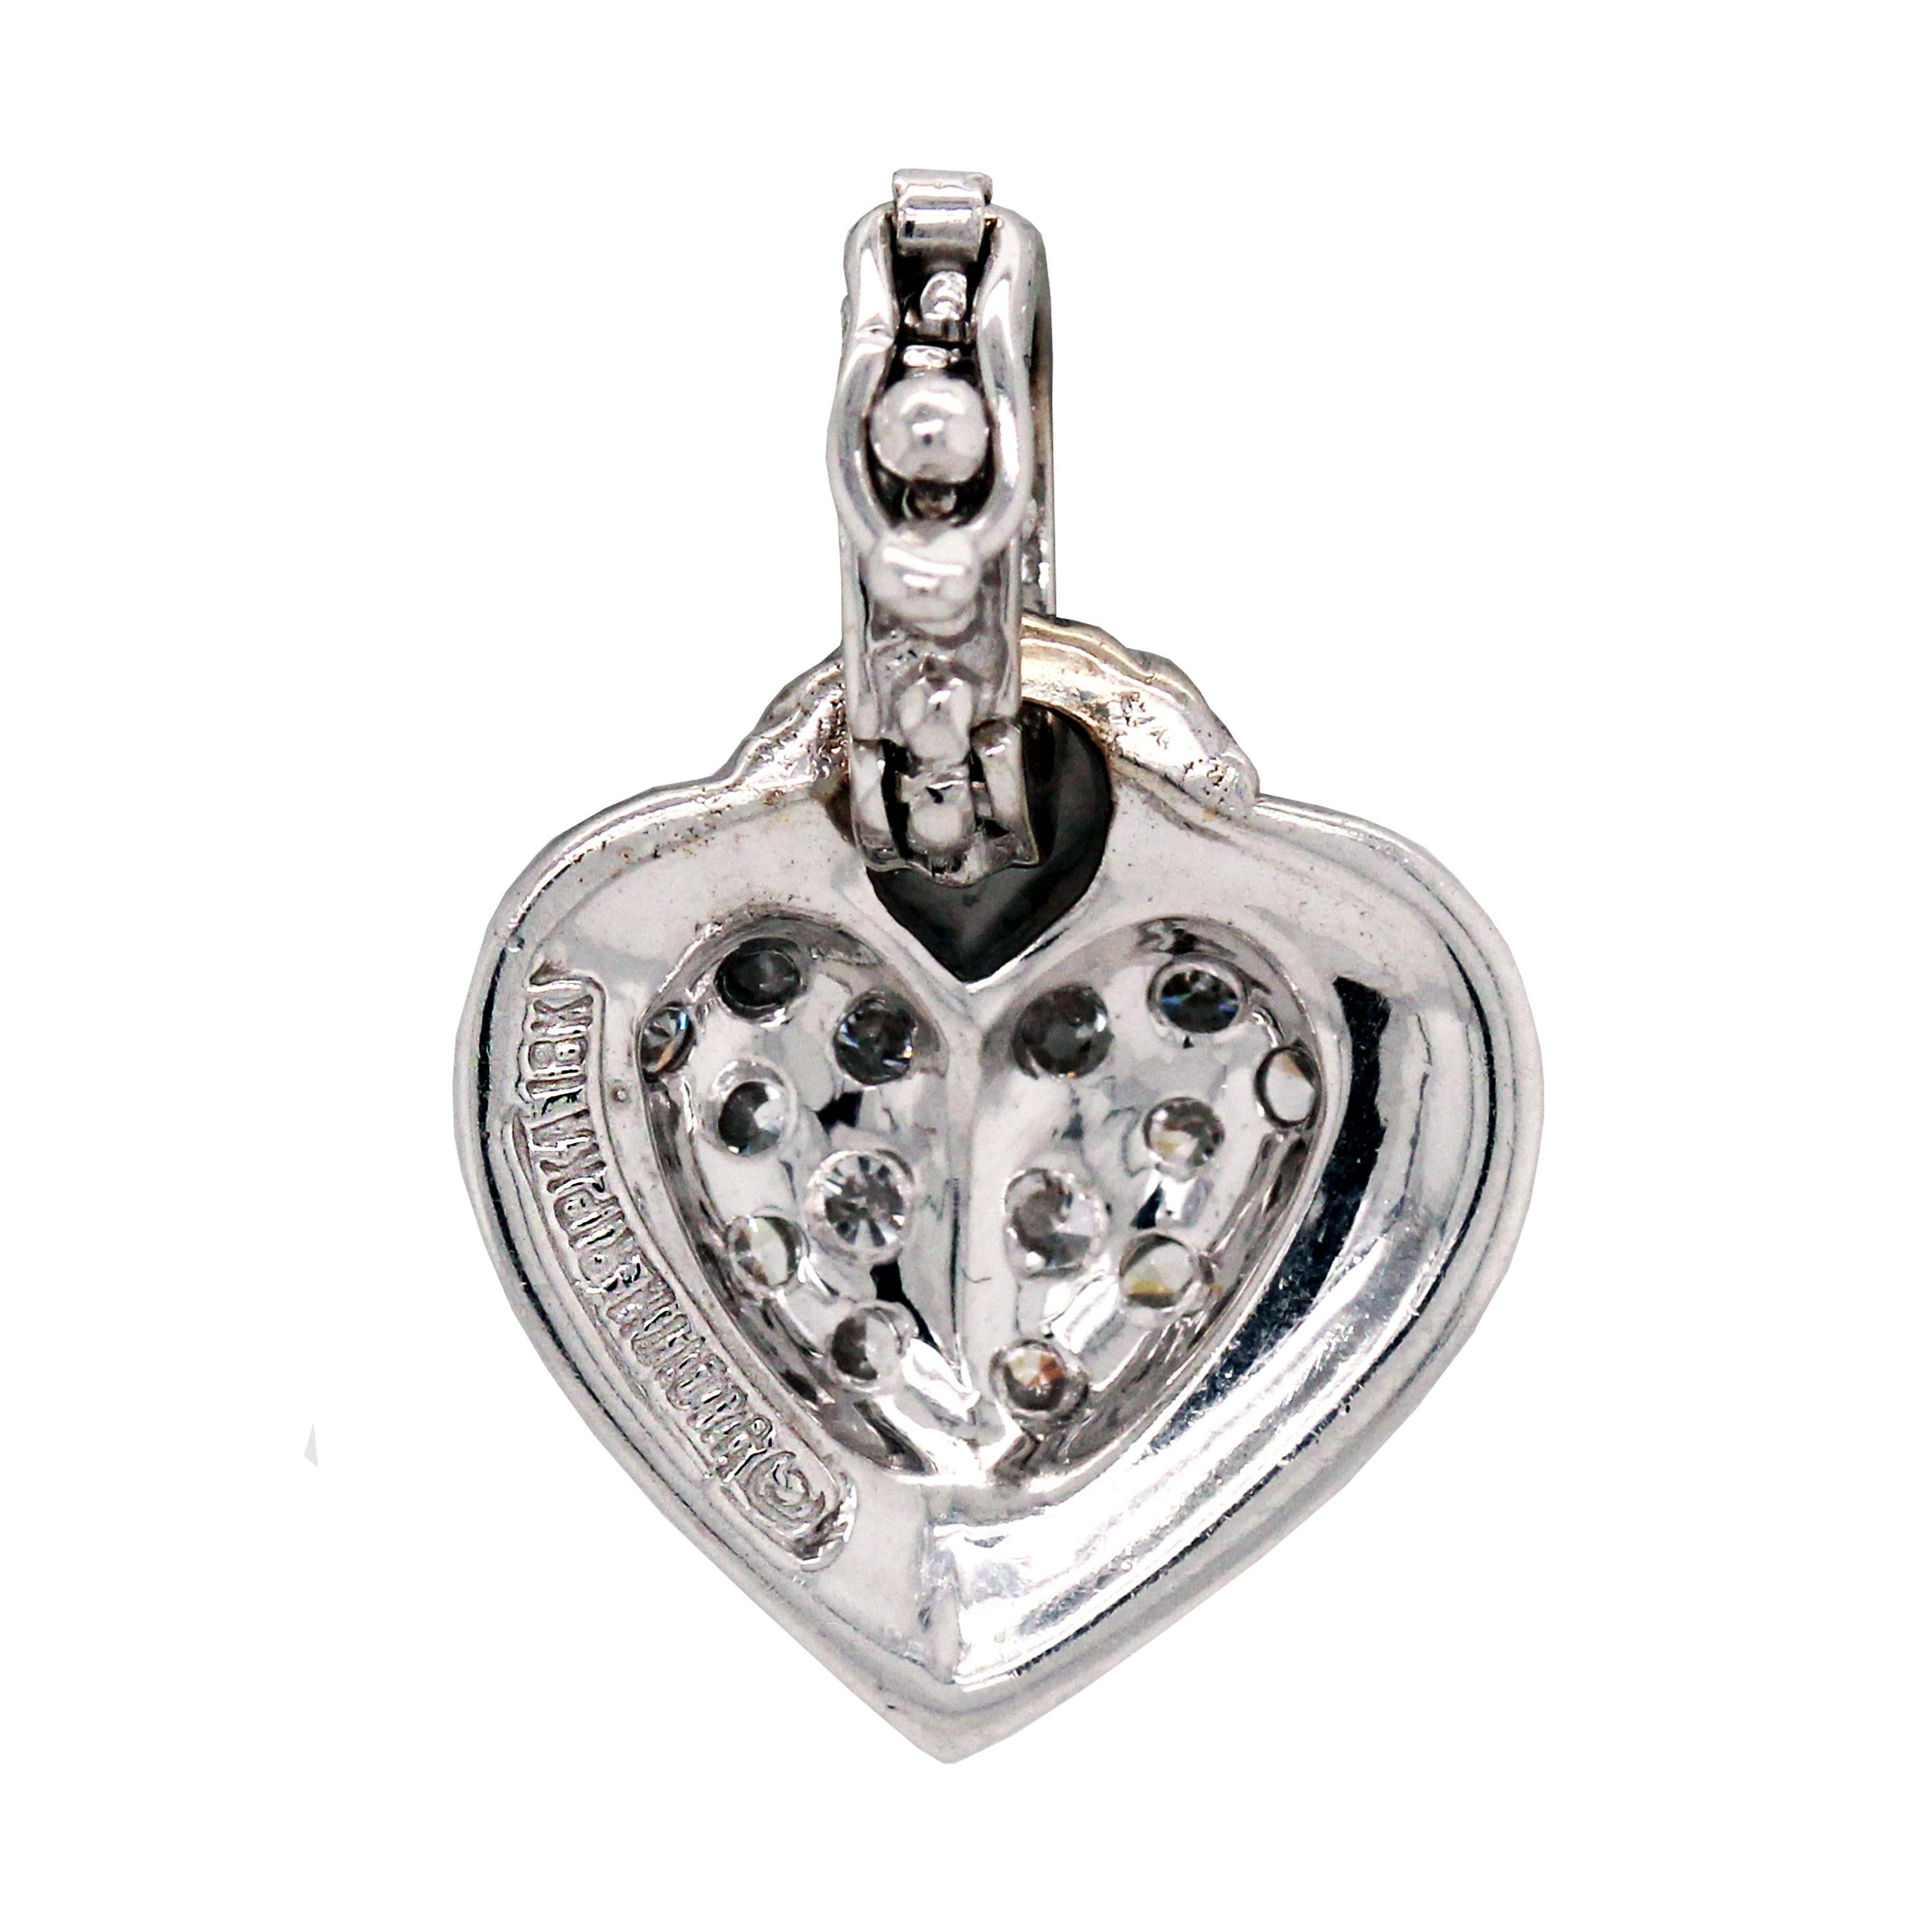 Round Cut Judith Ripka 18 Karat White Gold and Diamond Heart Pendant with Handmade Chain